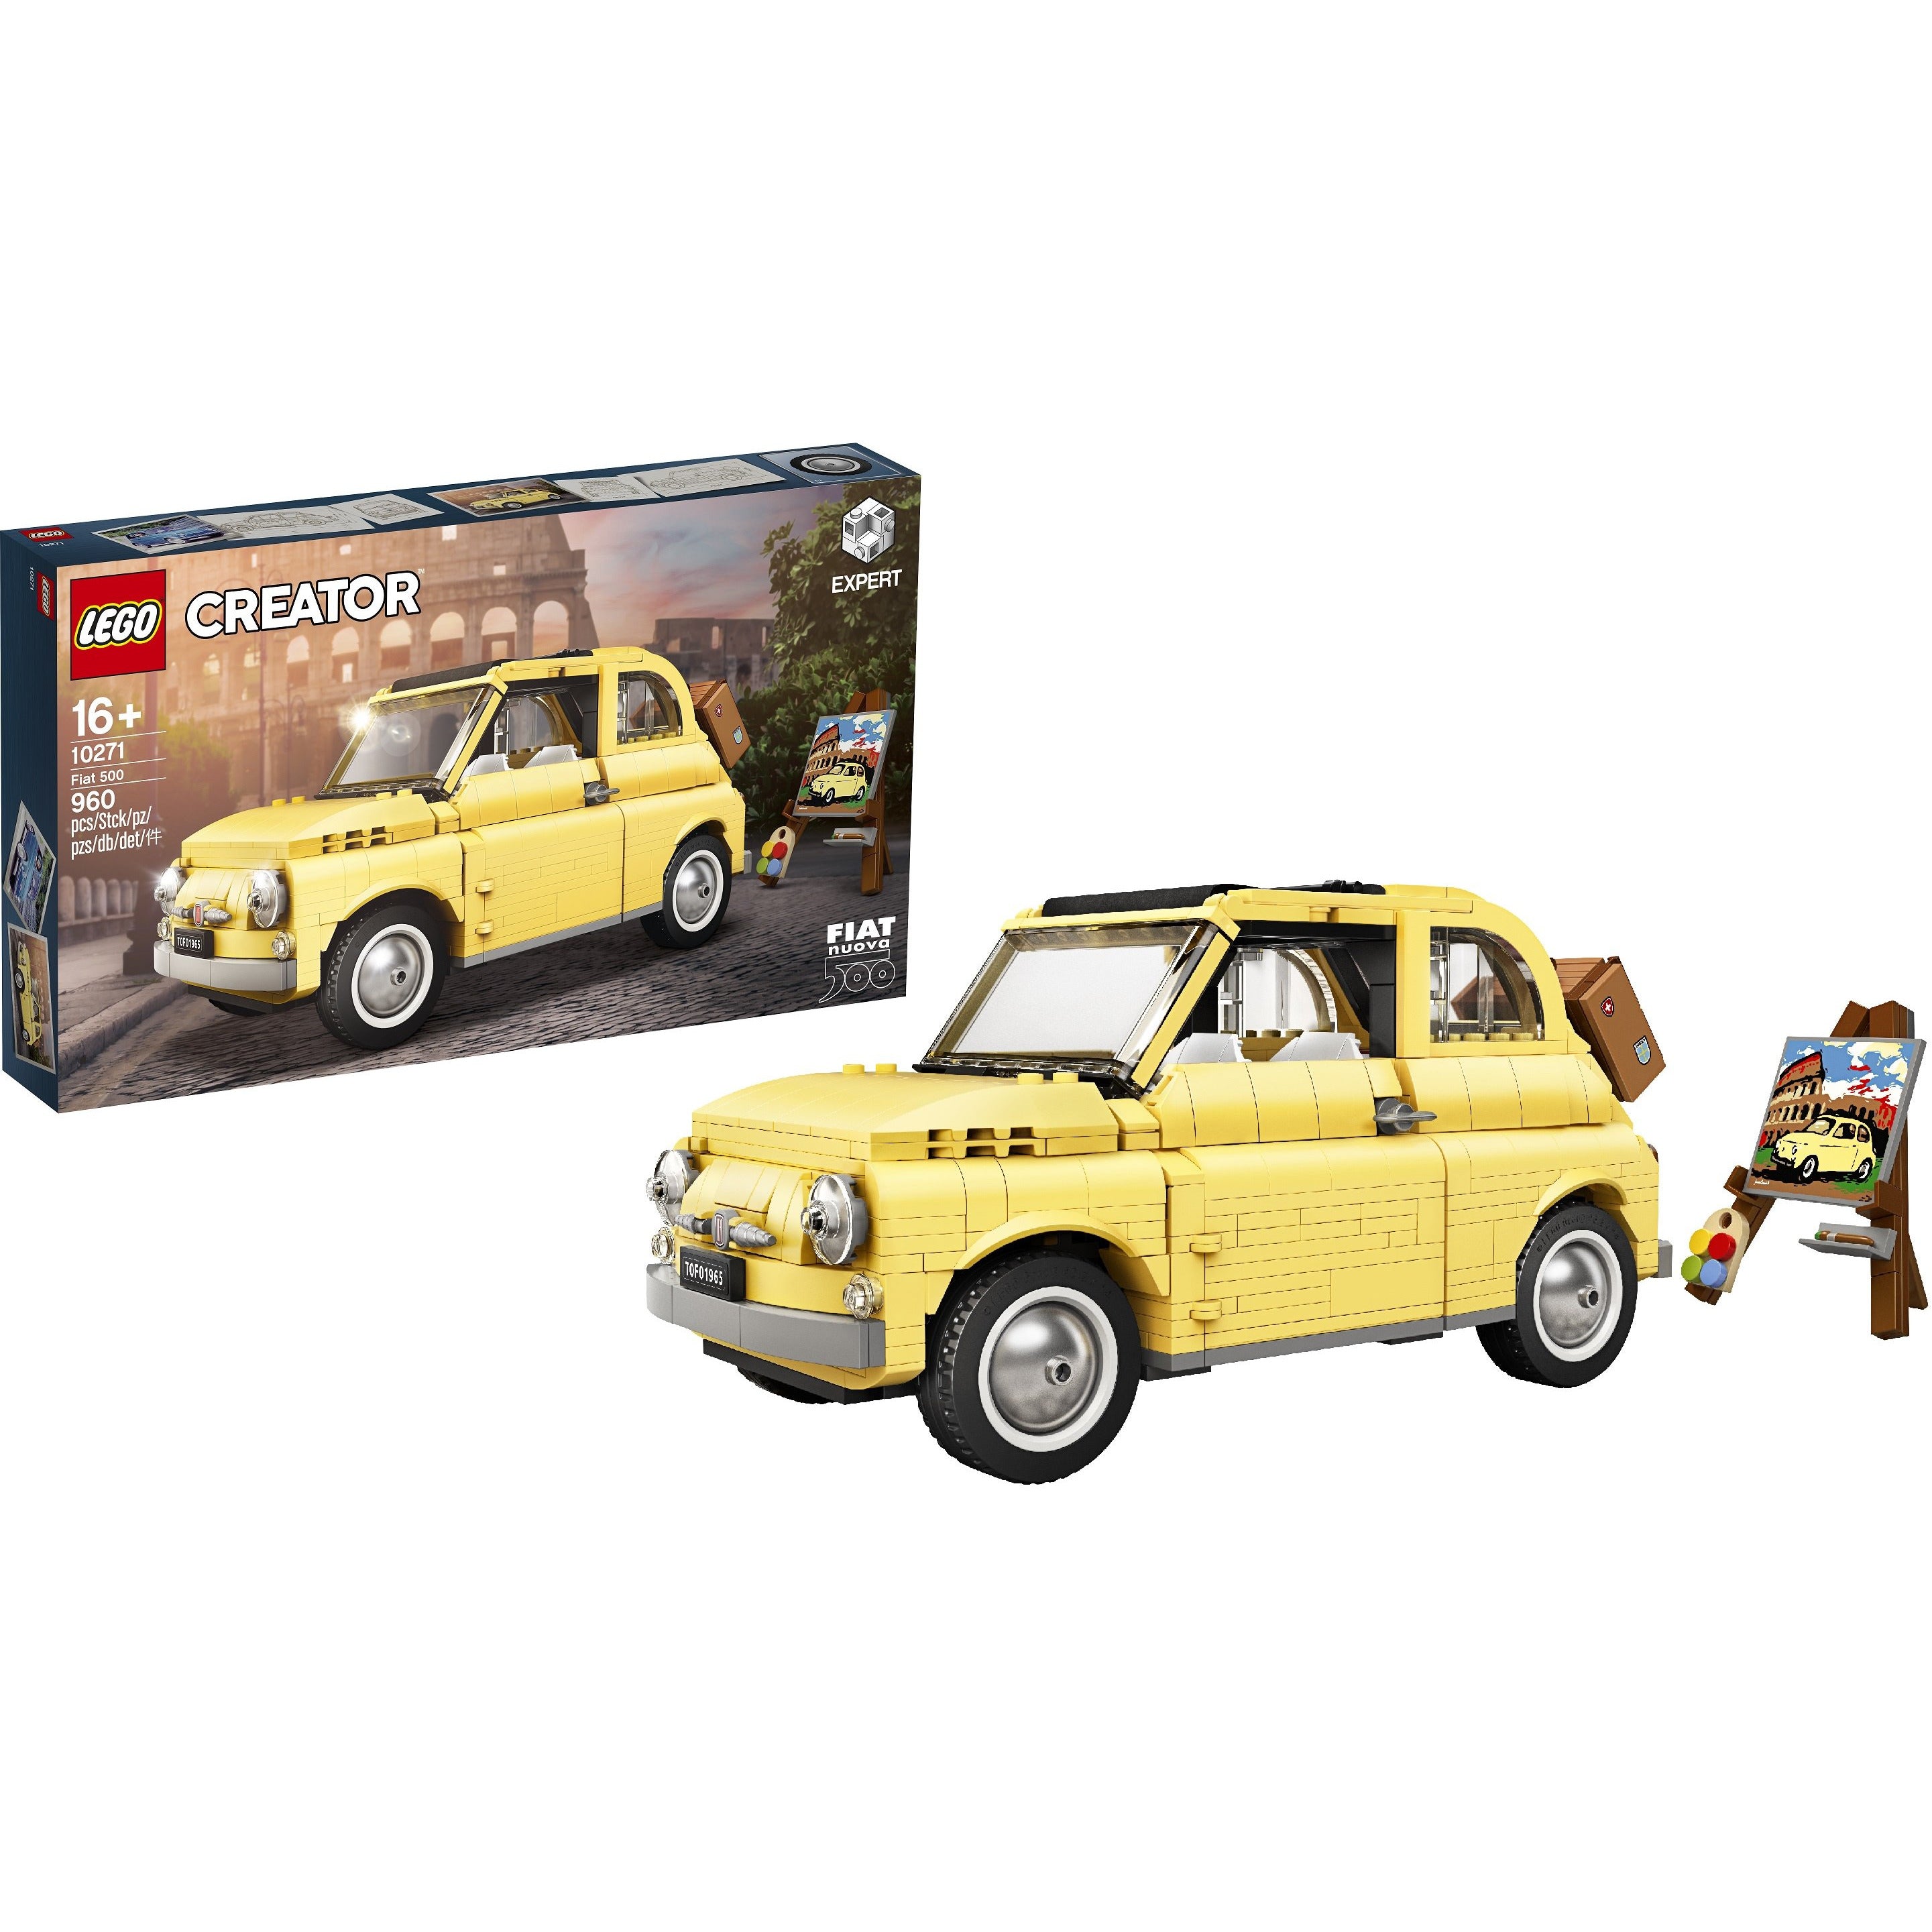 Lego Creator Expert: Fiat 500 10271